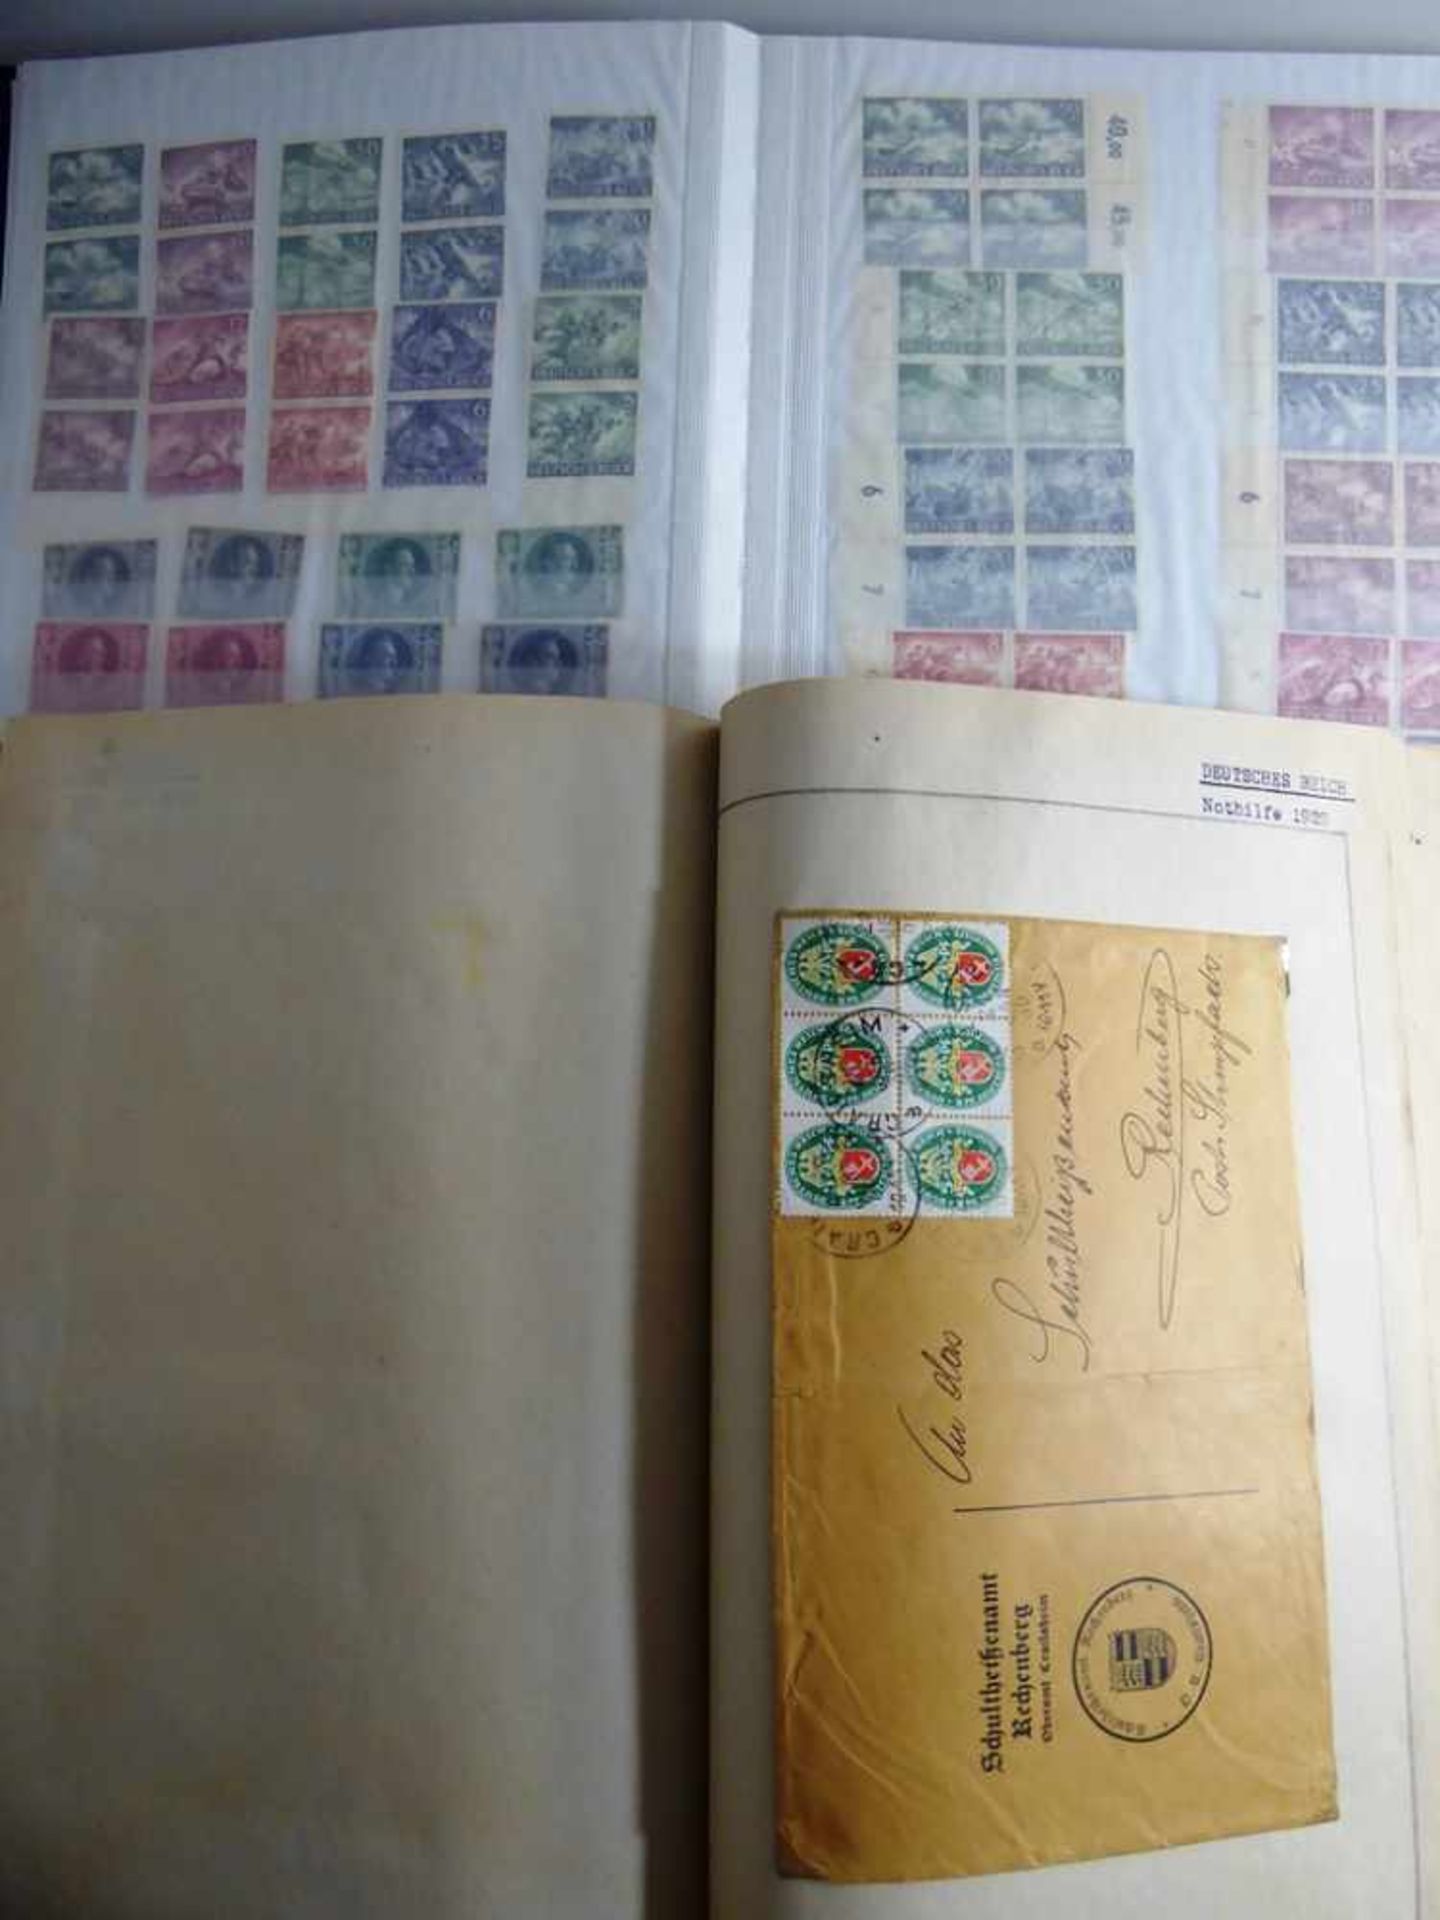 Briefmarken - umfangreiche Sammlung Altdeutsche Staaten und Deutsches Reich u.a., insg. 12 Alben ( - Image 3 of 4